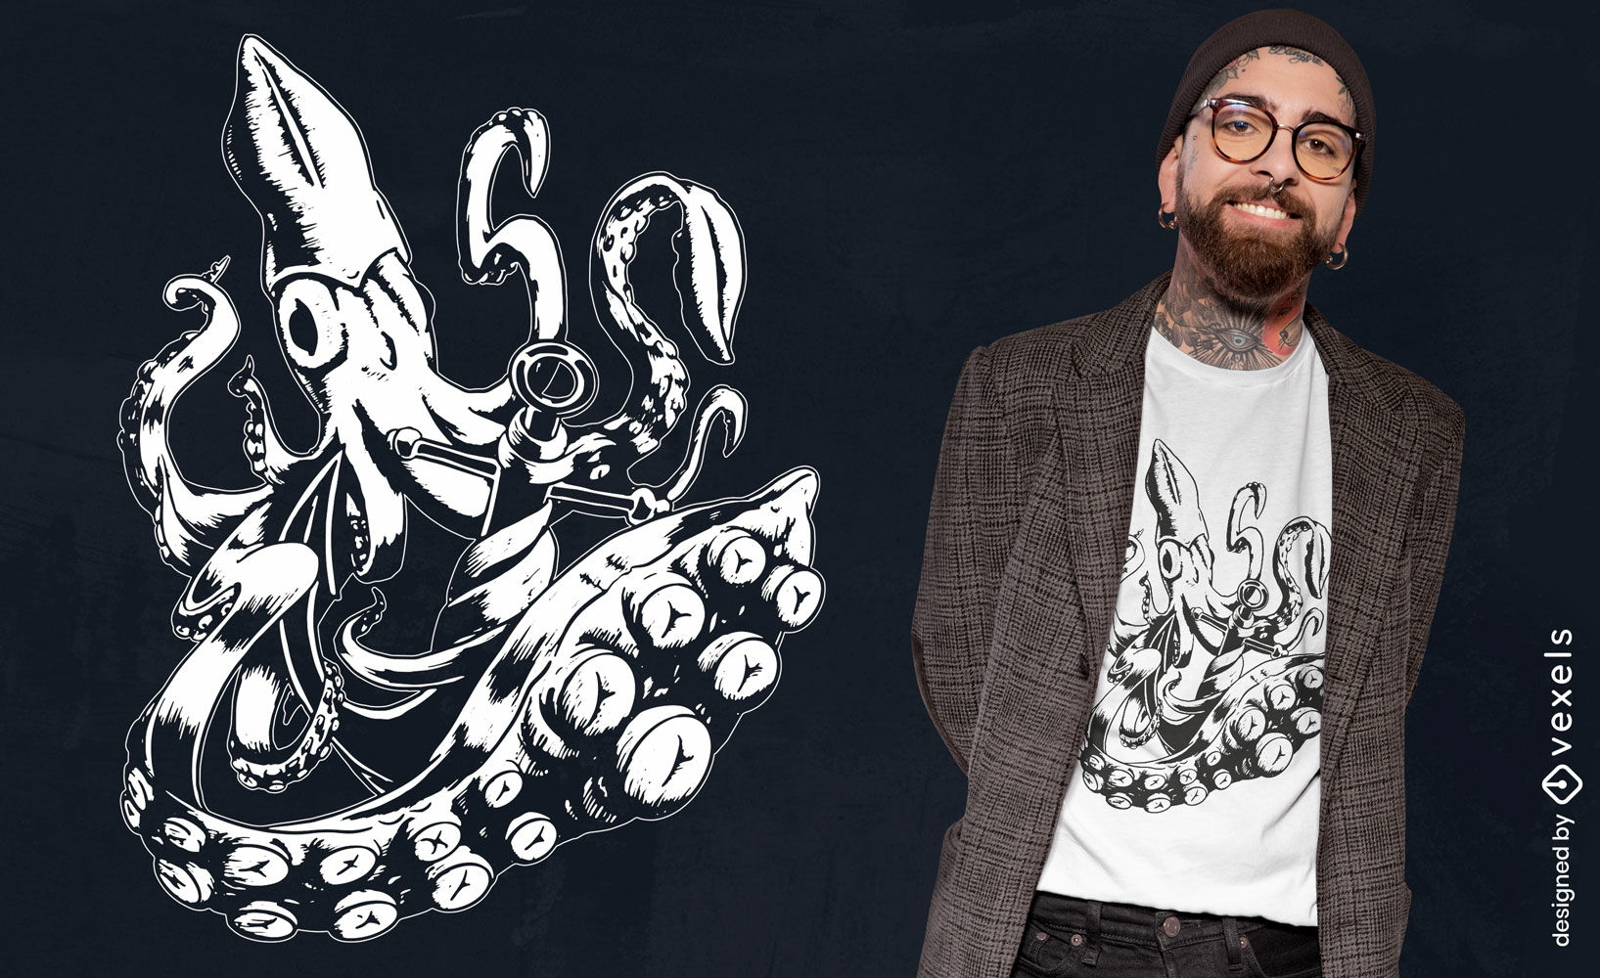 Giant squid t-shirt design